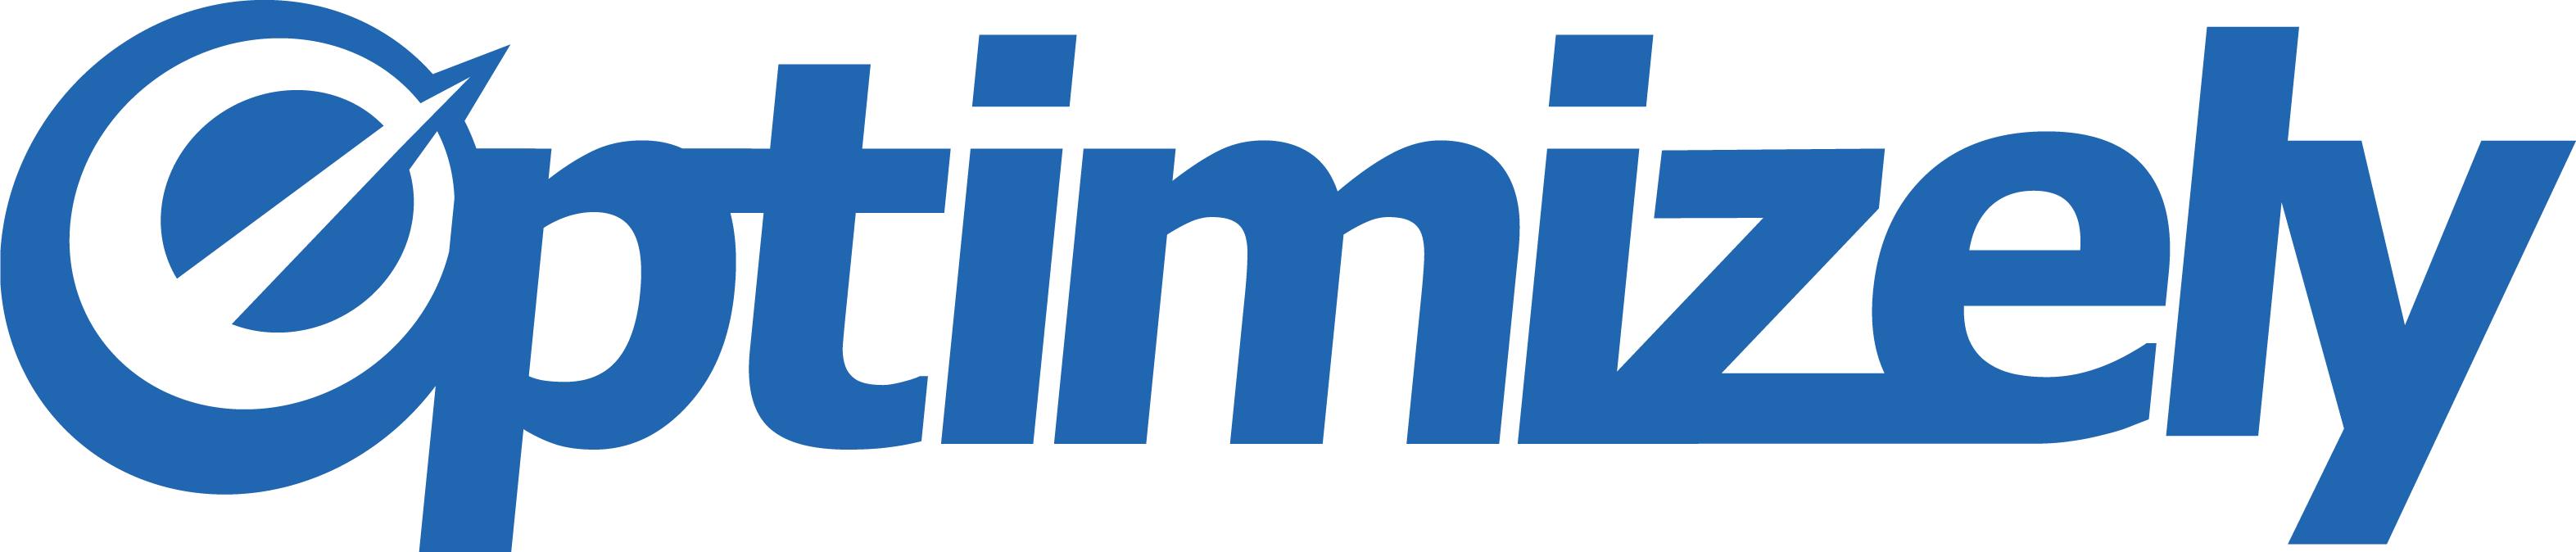 Optimizely Logo photo - 1